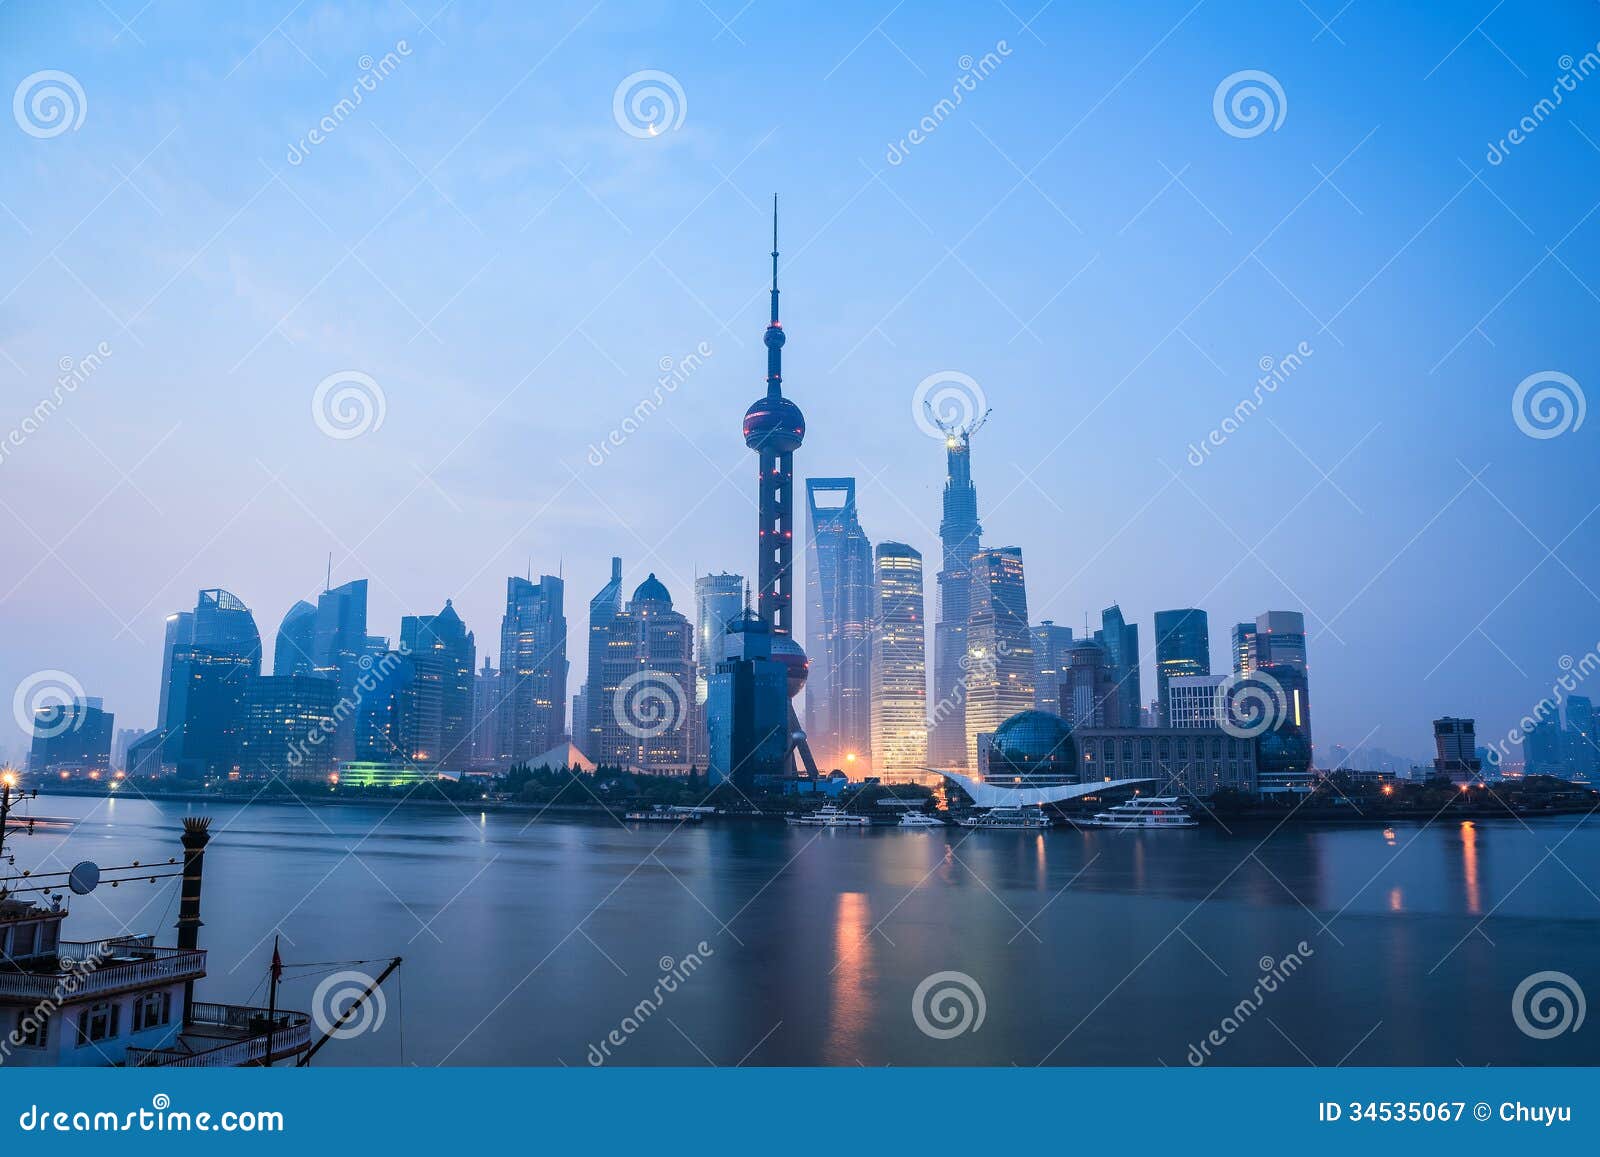 shanghai in daybreak